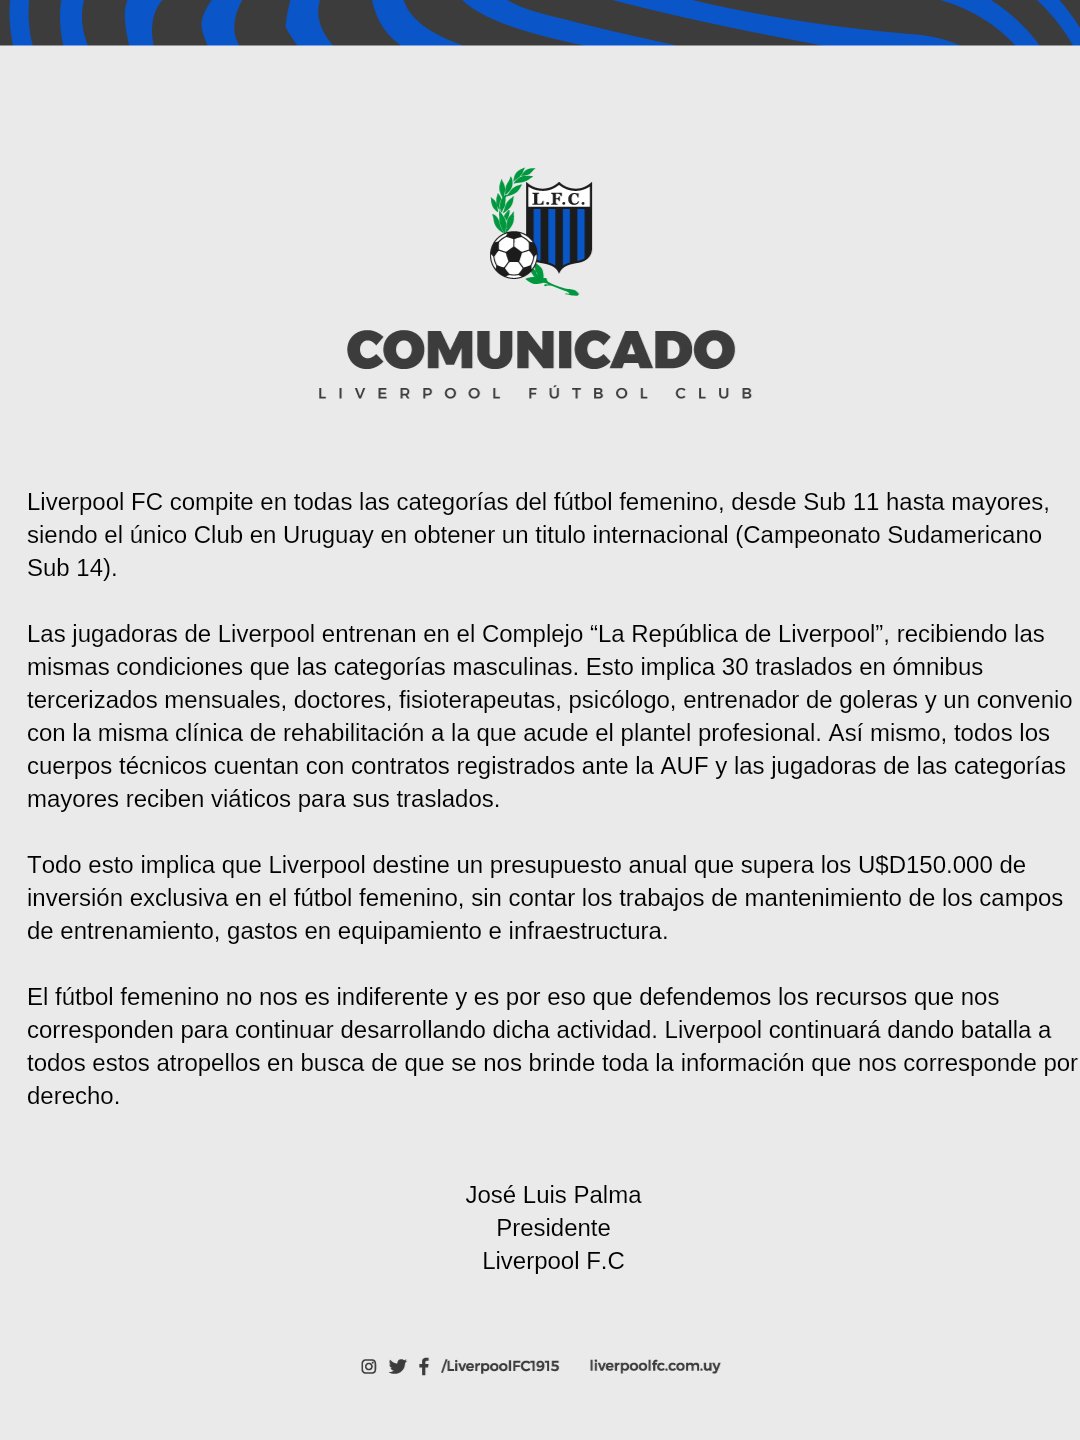 FUTBOL URUGUAYO : EL COMUNICADO DE LOS CLUBES PROFESIONALES DEL